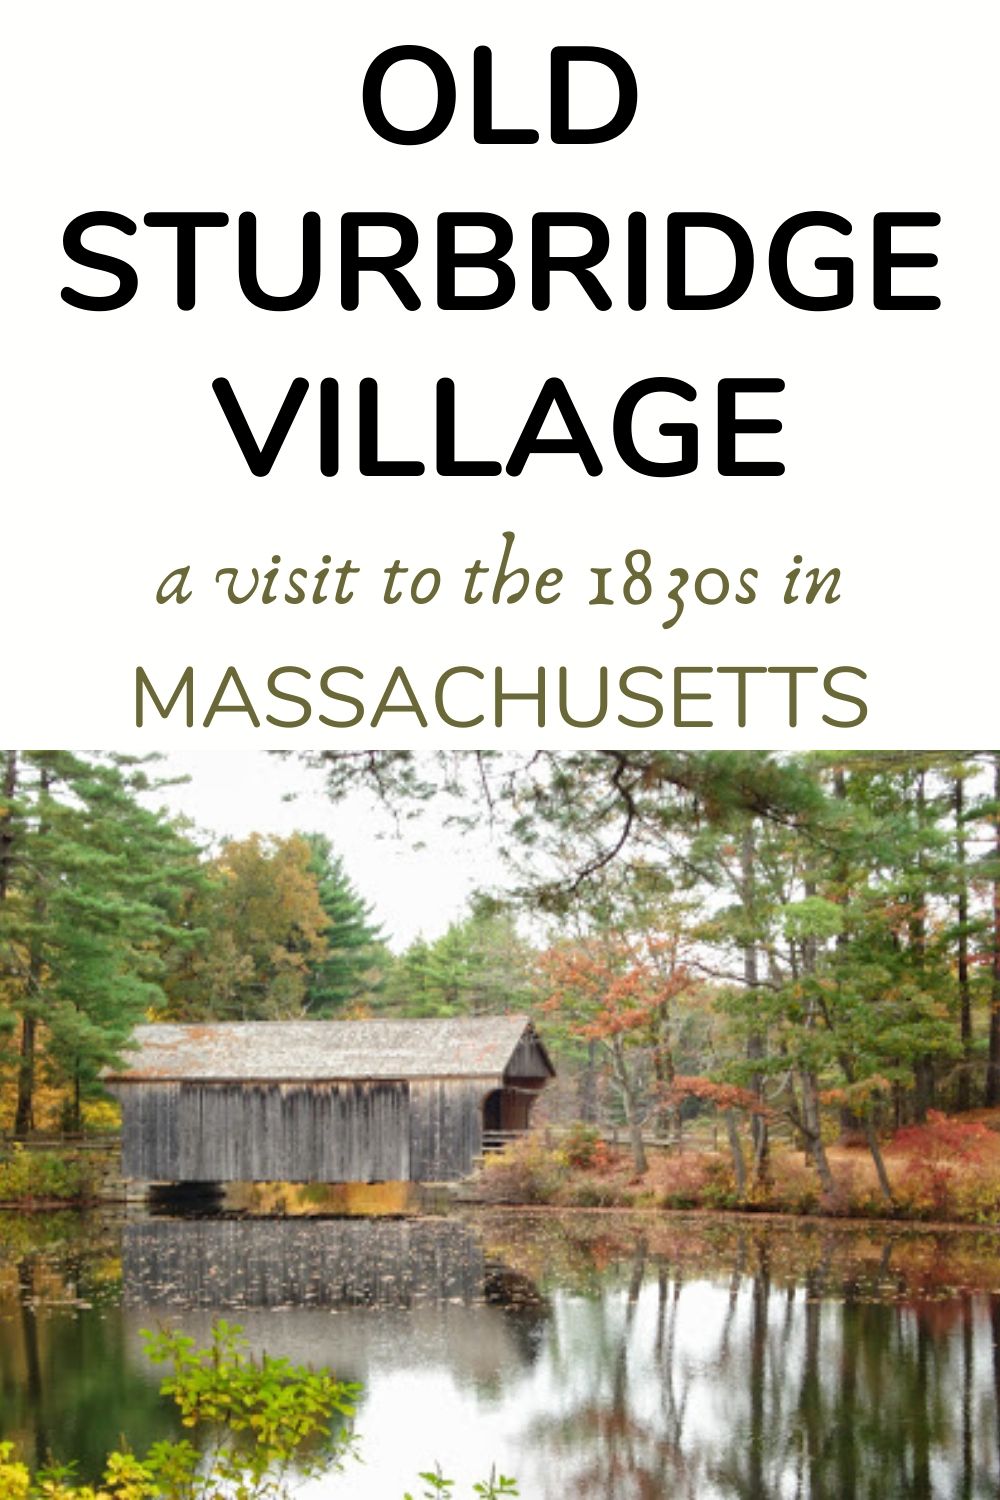 Old Sturbridge Village in Massachusetts